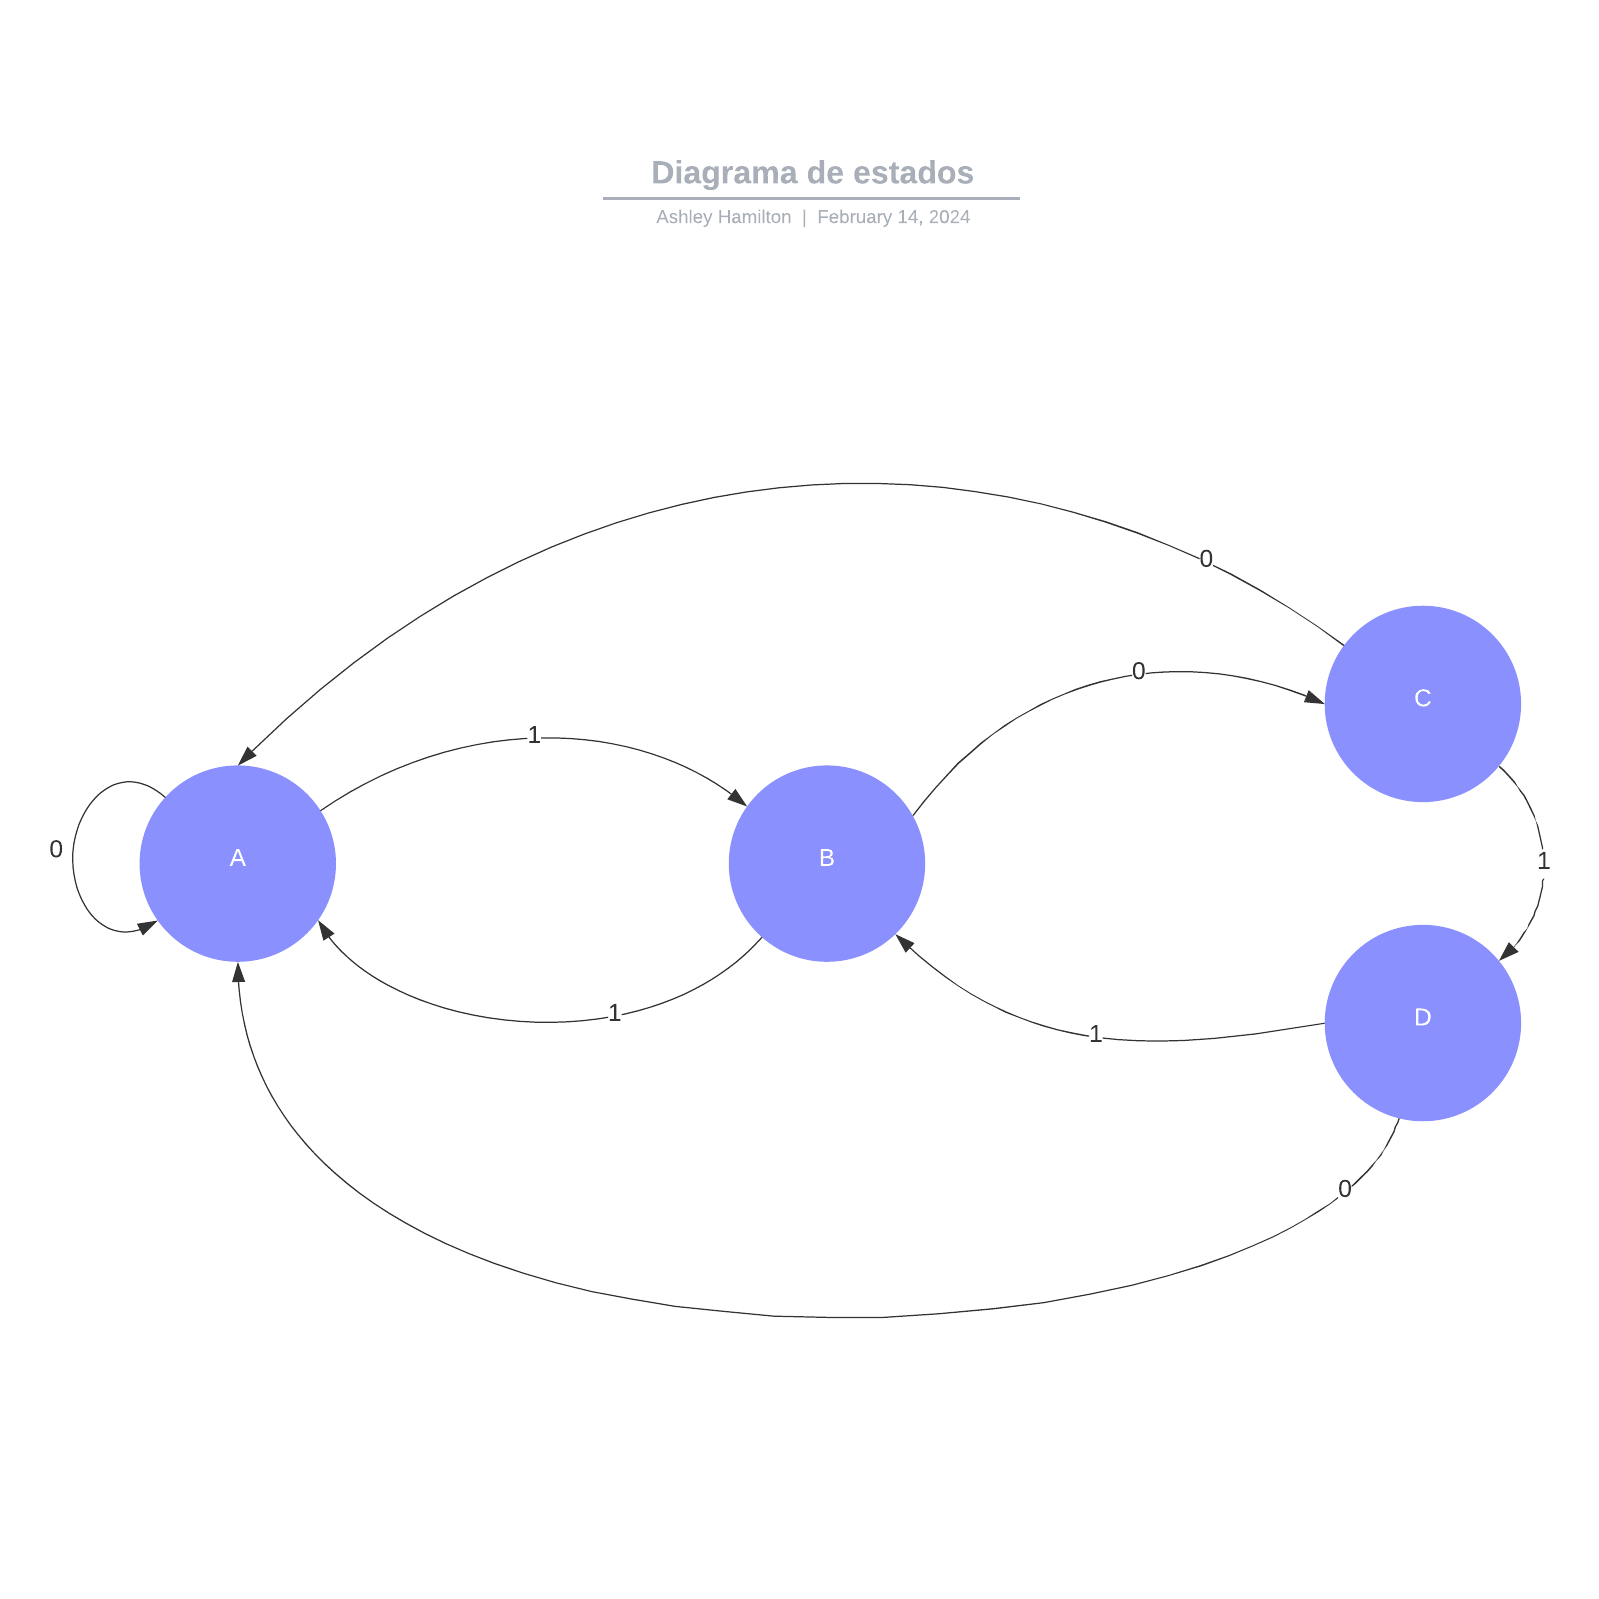 Diagrama de estados example